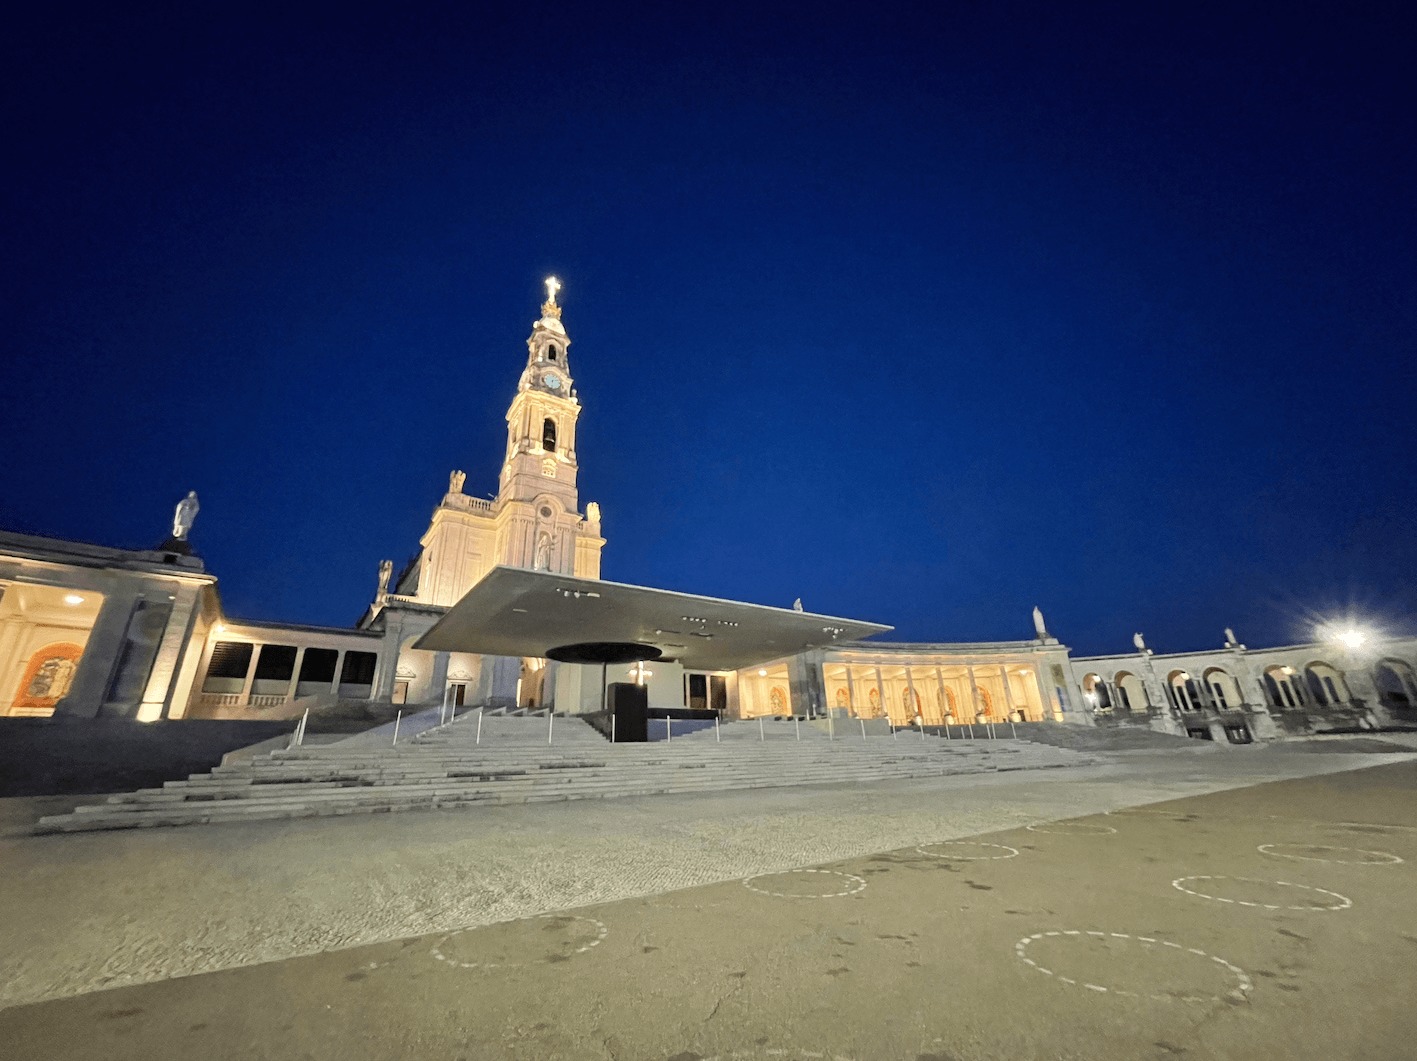 Foto noturna da frente do Santuário de Fátima que está iluminado, não há pessoas na foto.